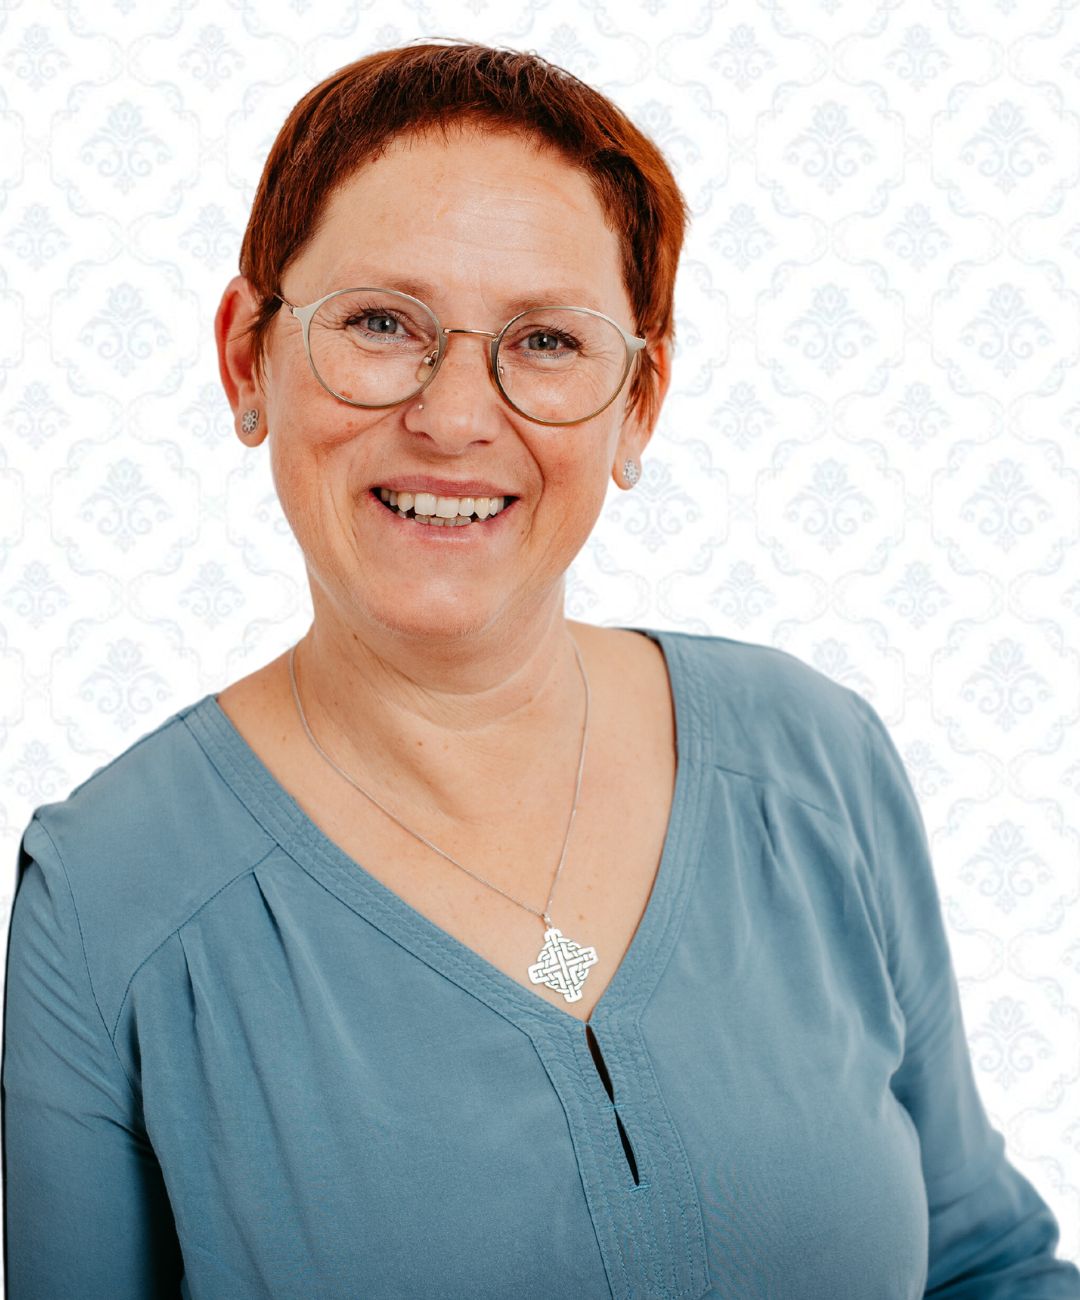 Monika Karl-Schild, DGKP bei pflege-daheim der Agentur für kompetente 24-Stunden-Betreuung